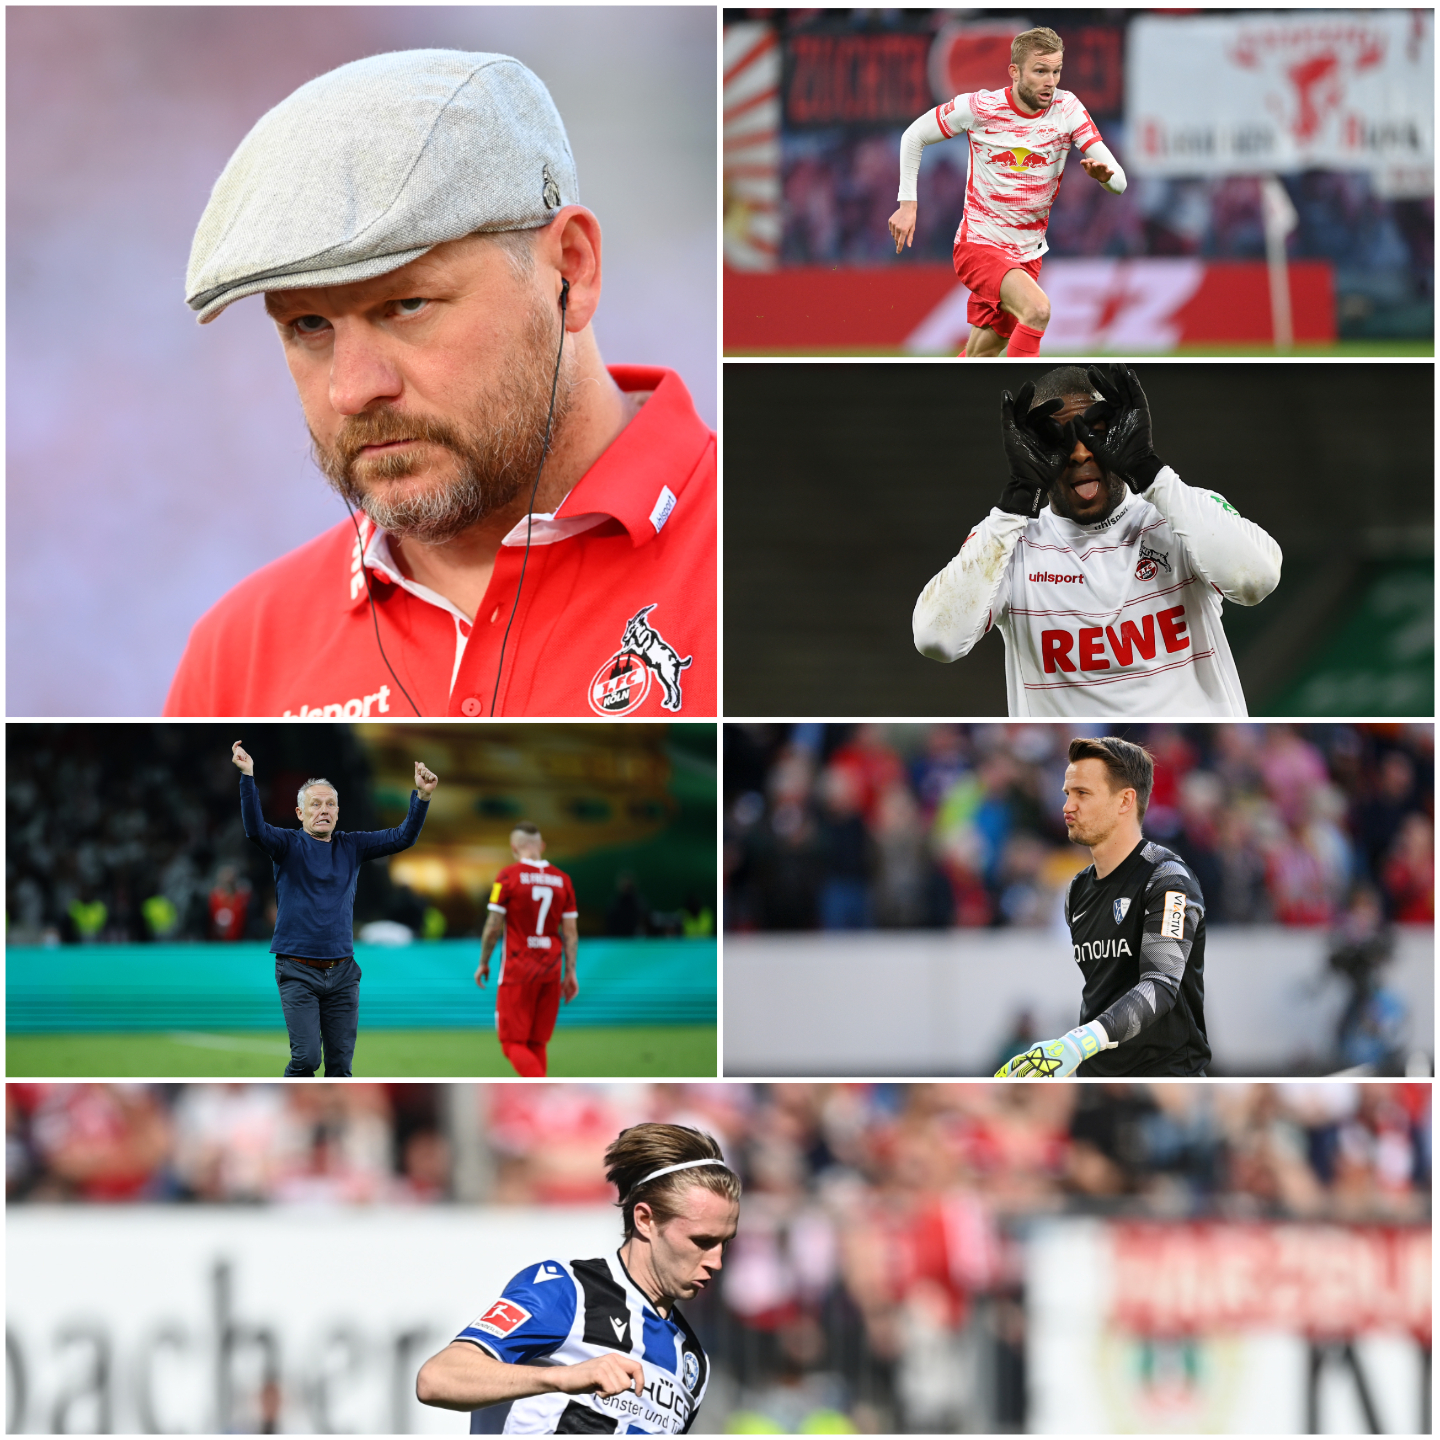 Oos times com mais finalizações após a 18ª rodada da Bundesliga